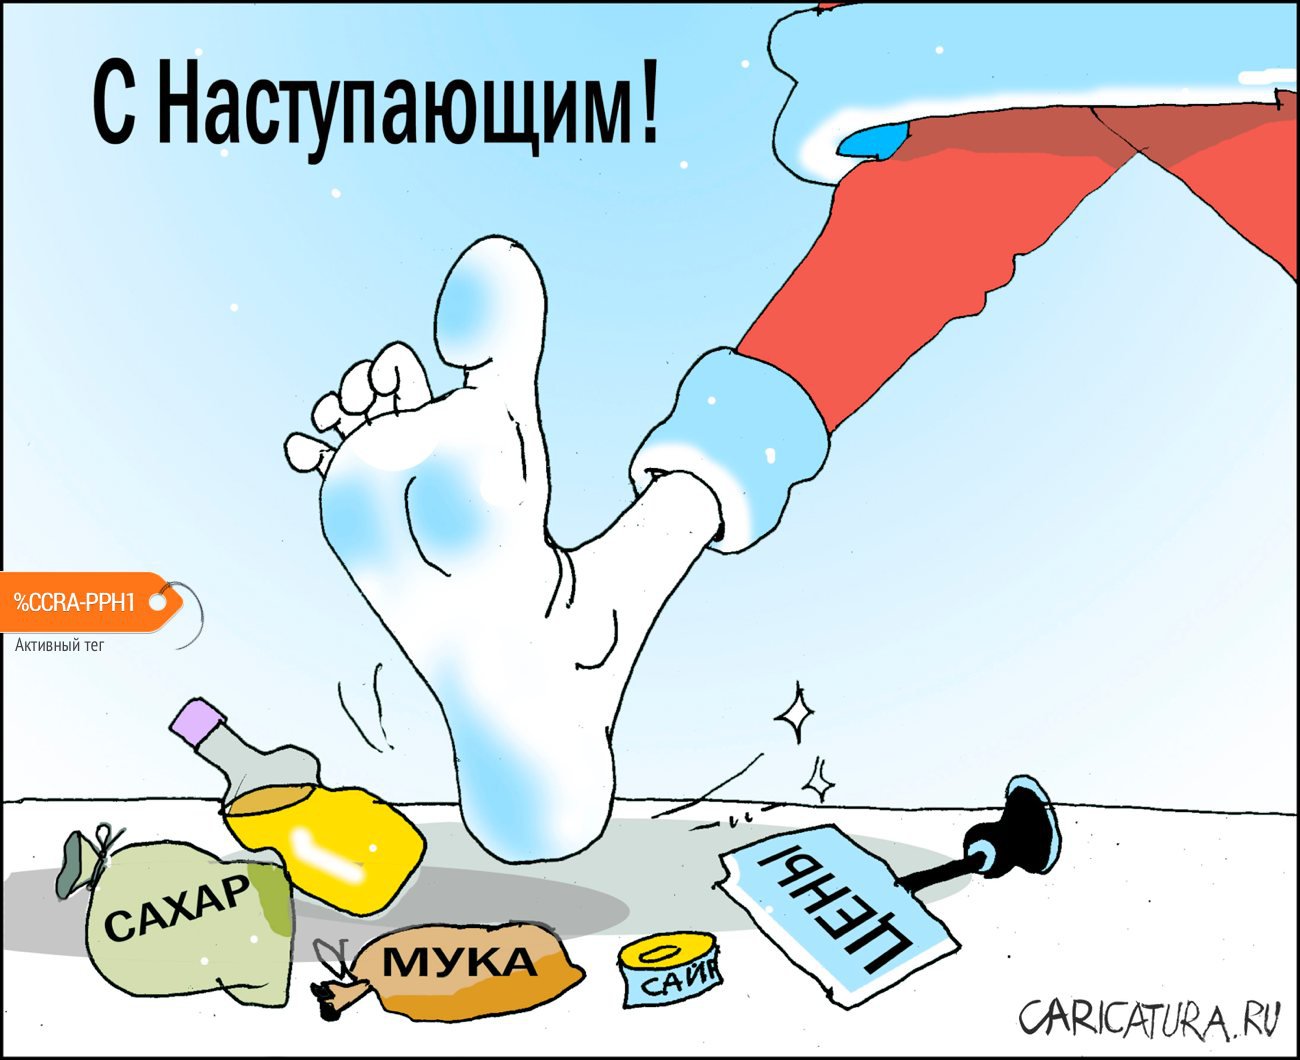 Карикатура "С Наступающим!", Александр Уваров